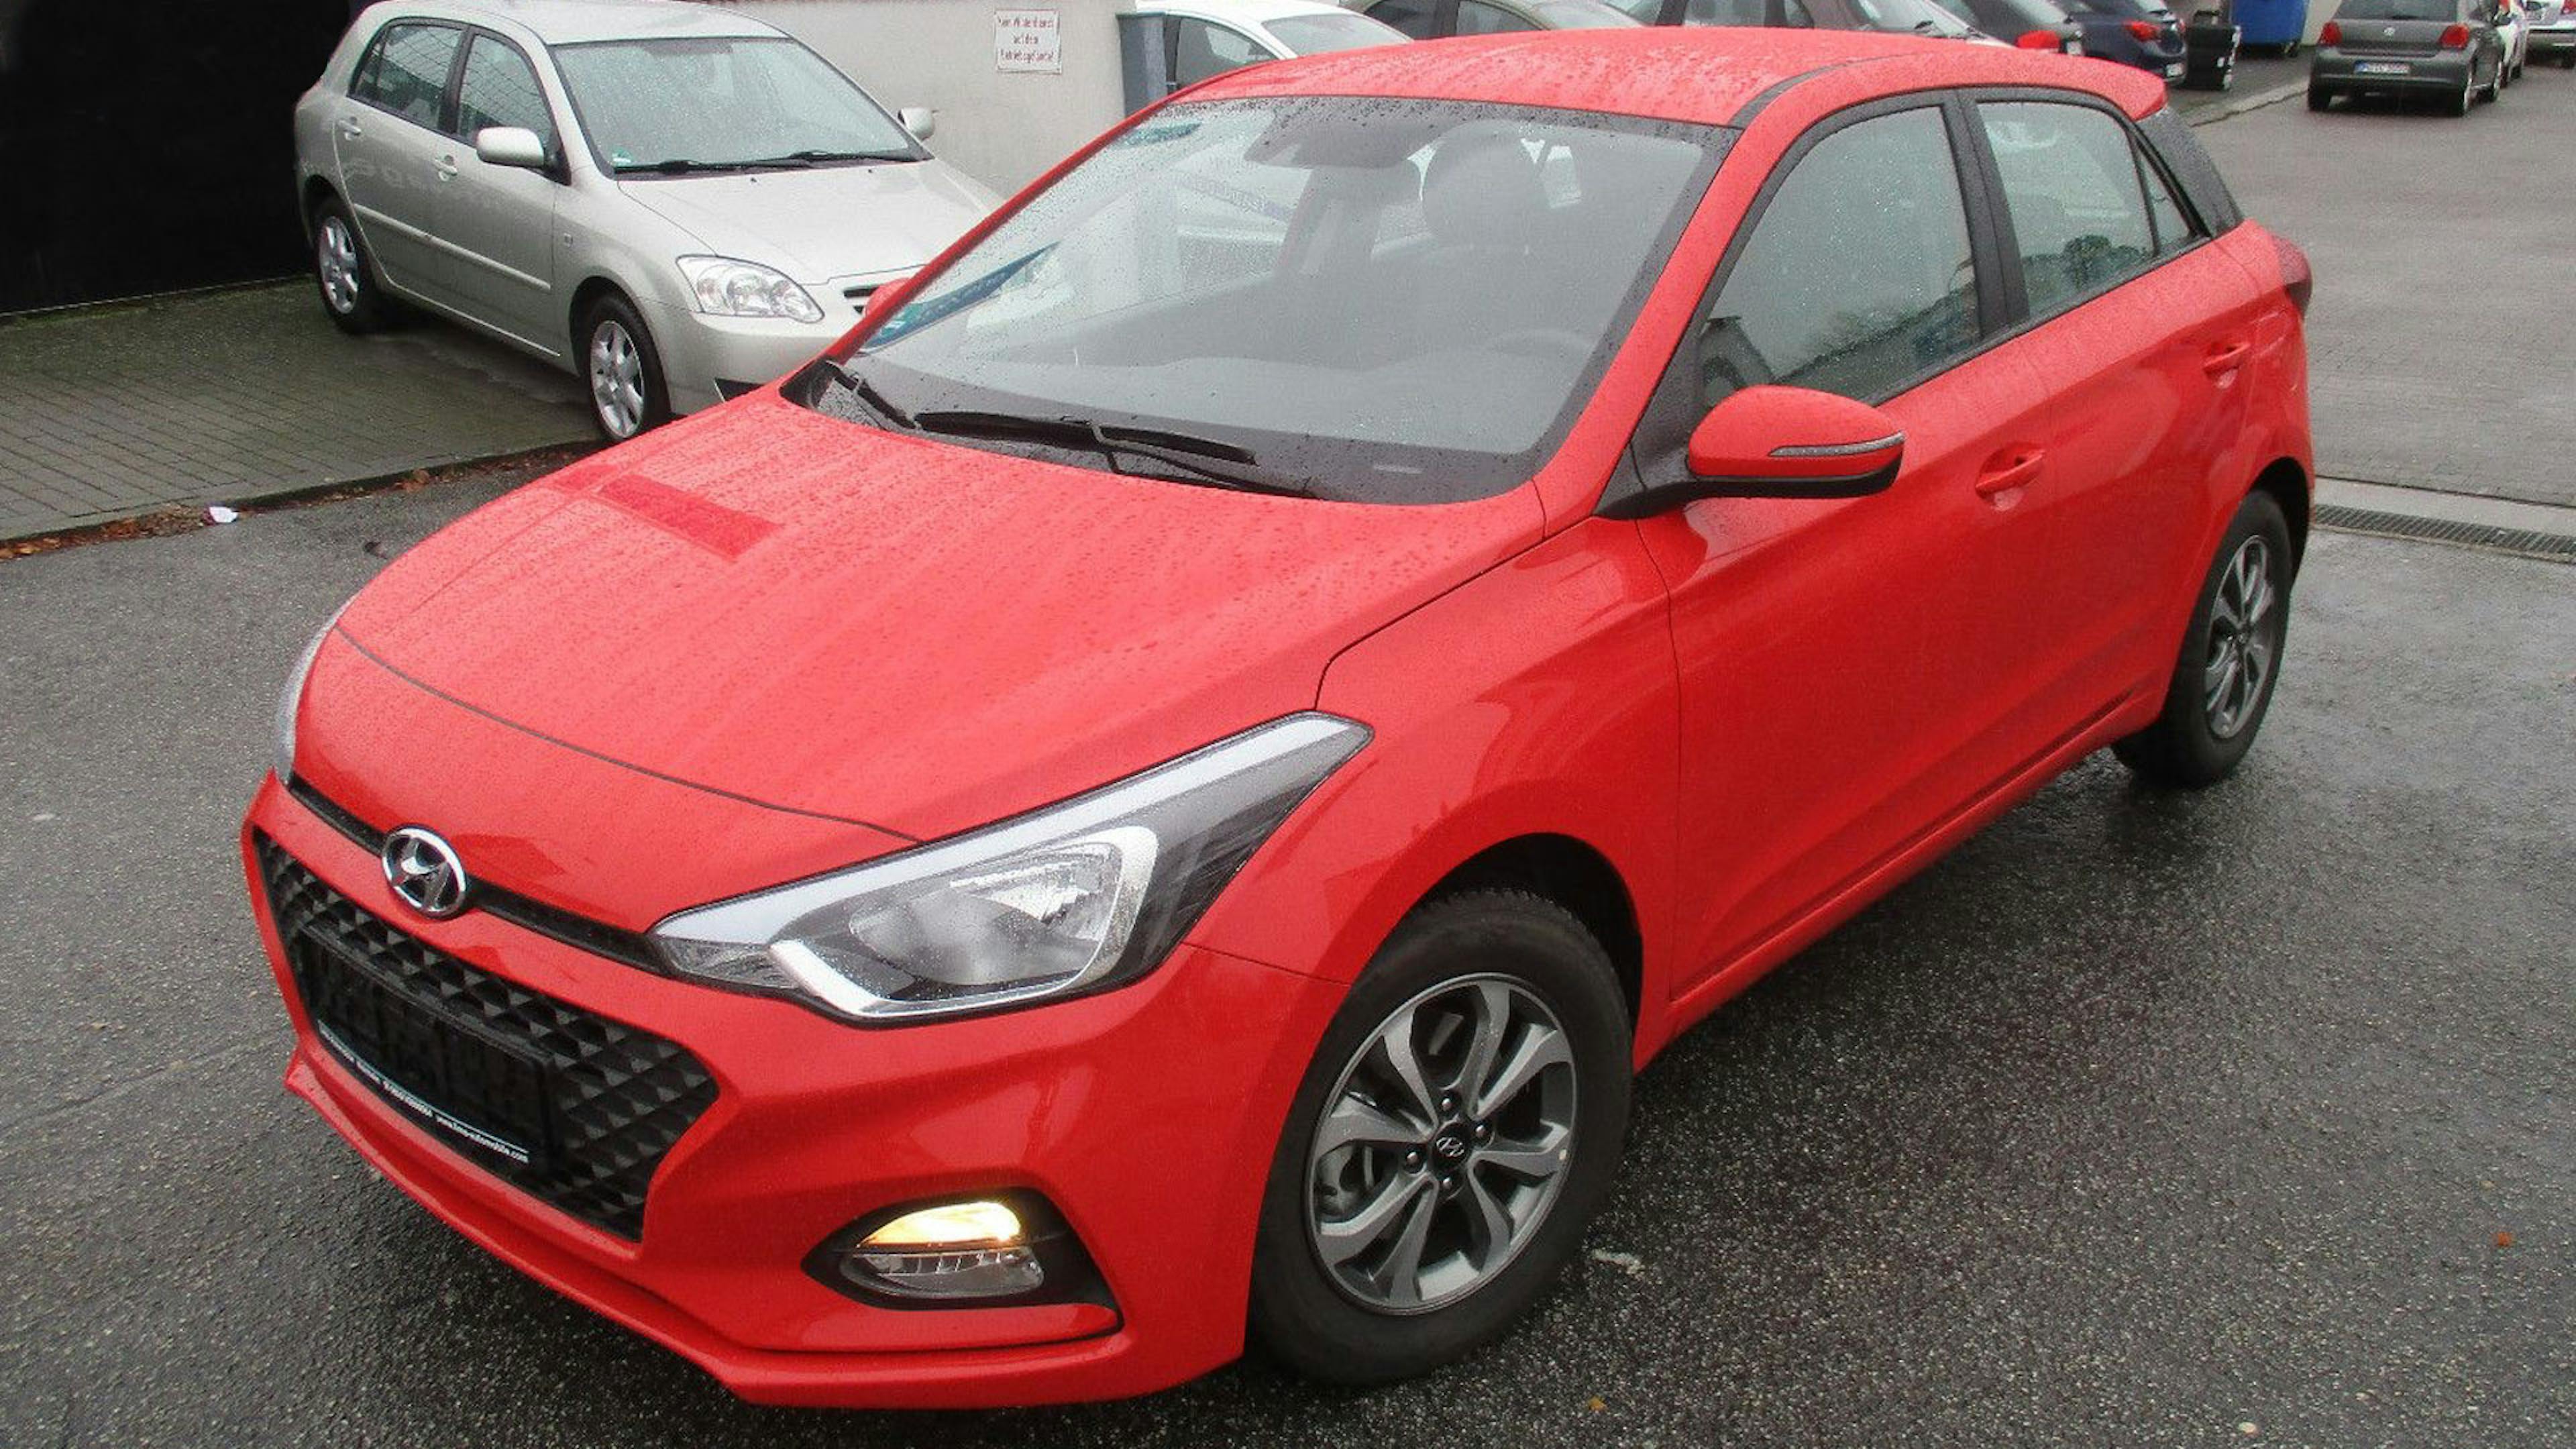  Ein roter Hyundai i20 steht auf einem Parkplatz.